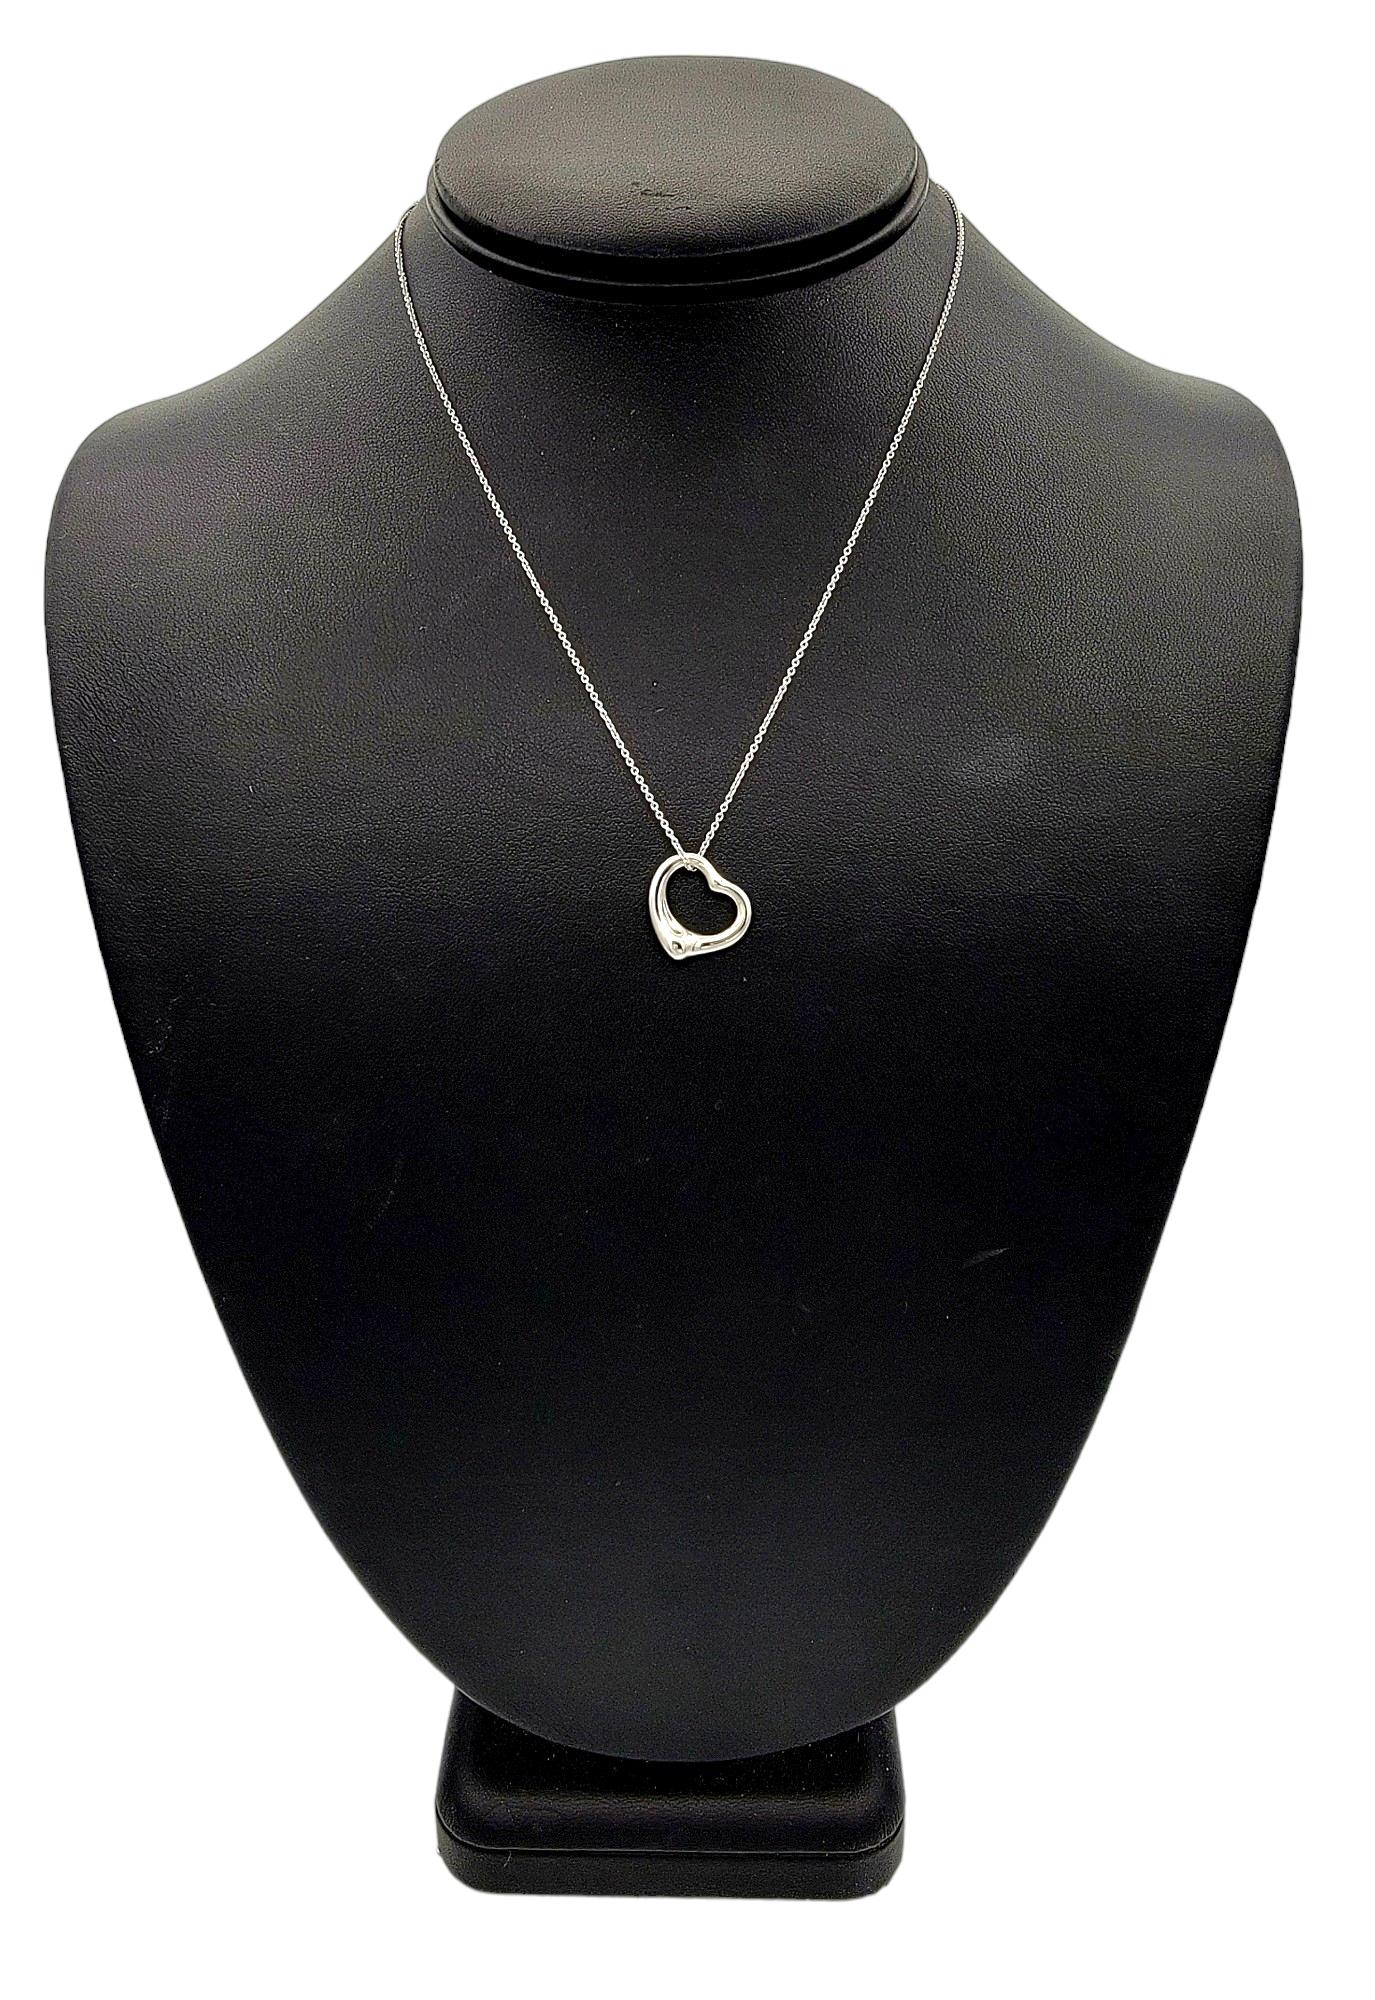 Tiffany & Co. Elsa Peretti Open Heart Pendant Chain Necklace Set in Platinum For Sale 3